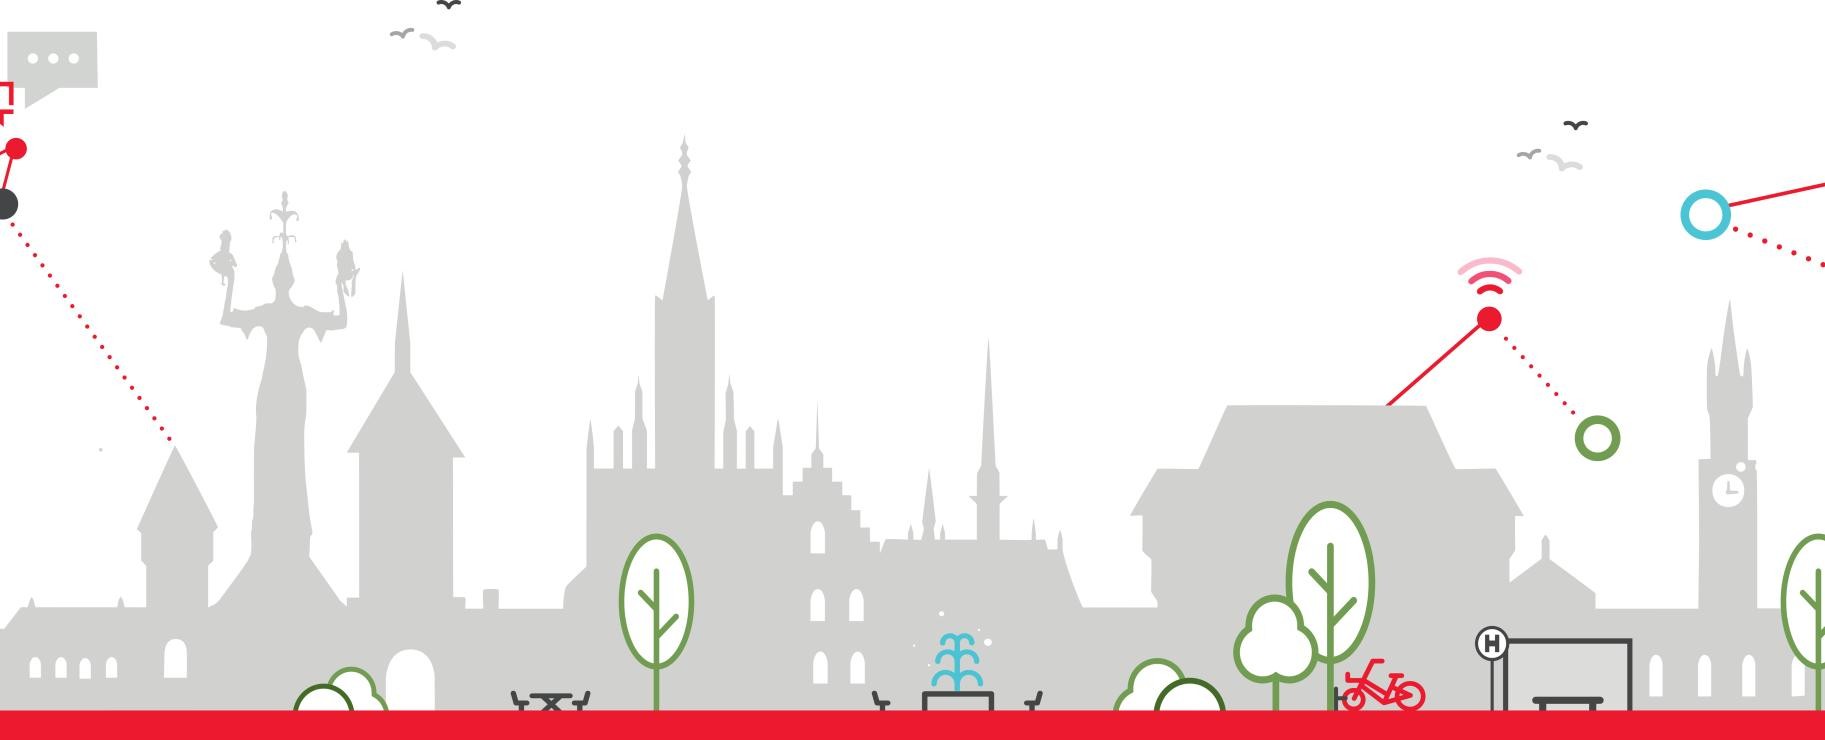 Stadt Konstanz mit einer Graphik der vier Handlungsfelder: Smarte Verwaltung, Smartes Stadtleben, Smarte Stadtplanung, Smarte Mobilität, Smarte Wirtschaft